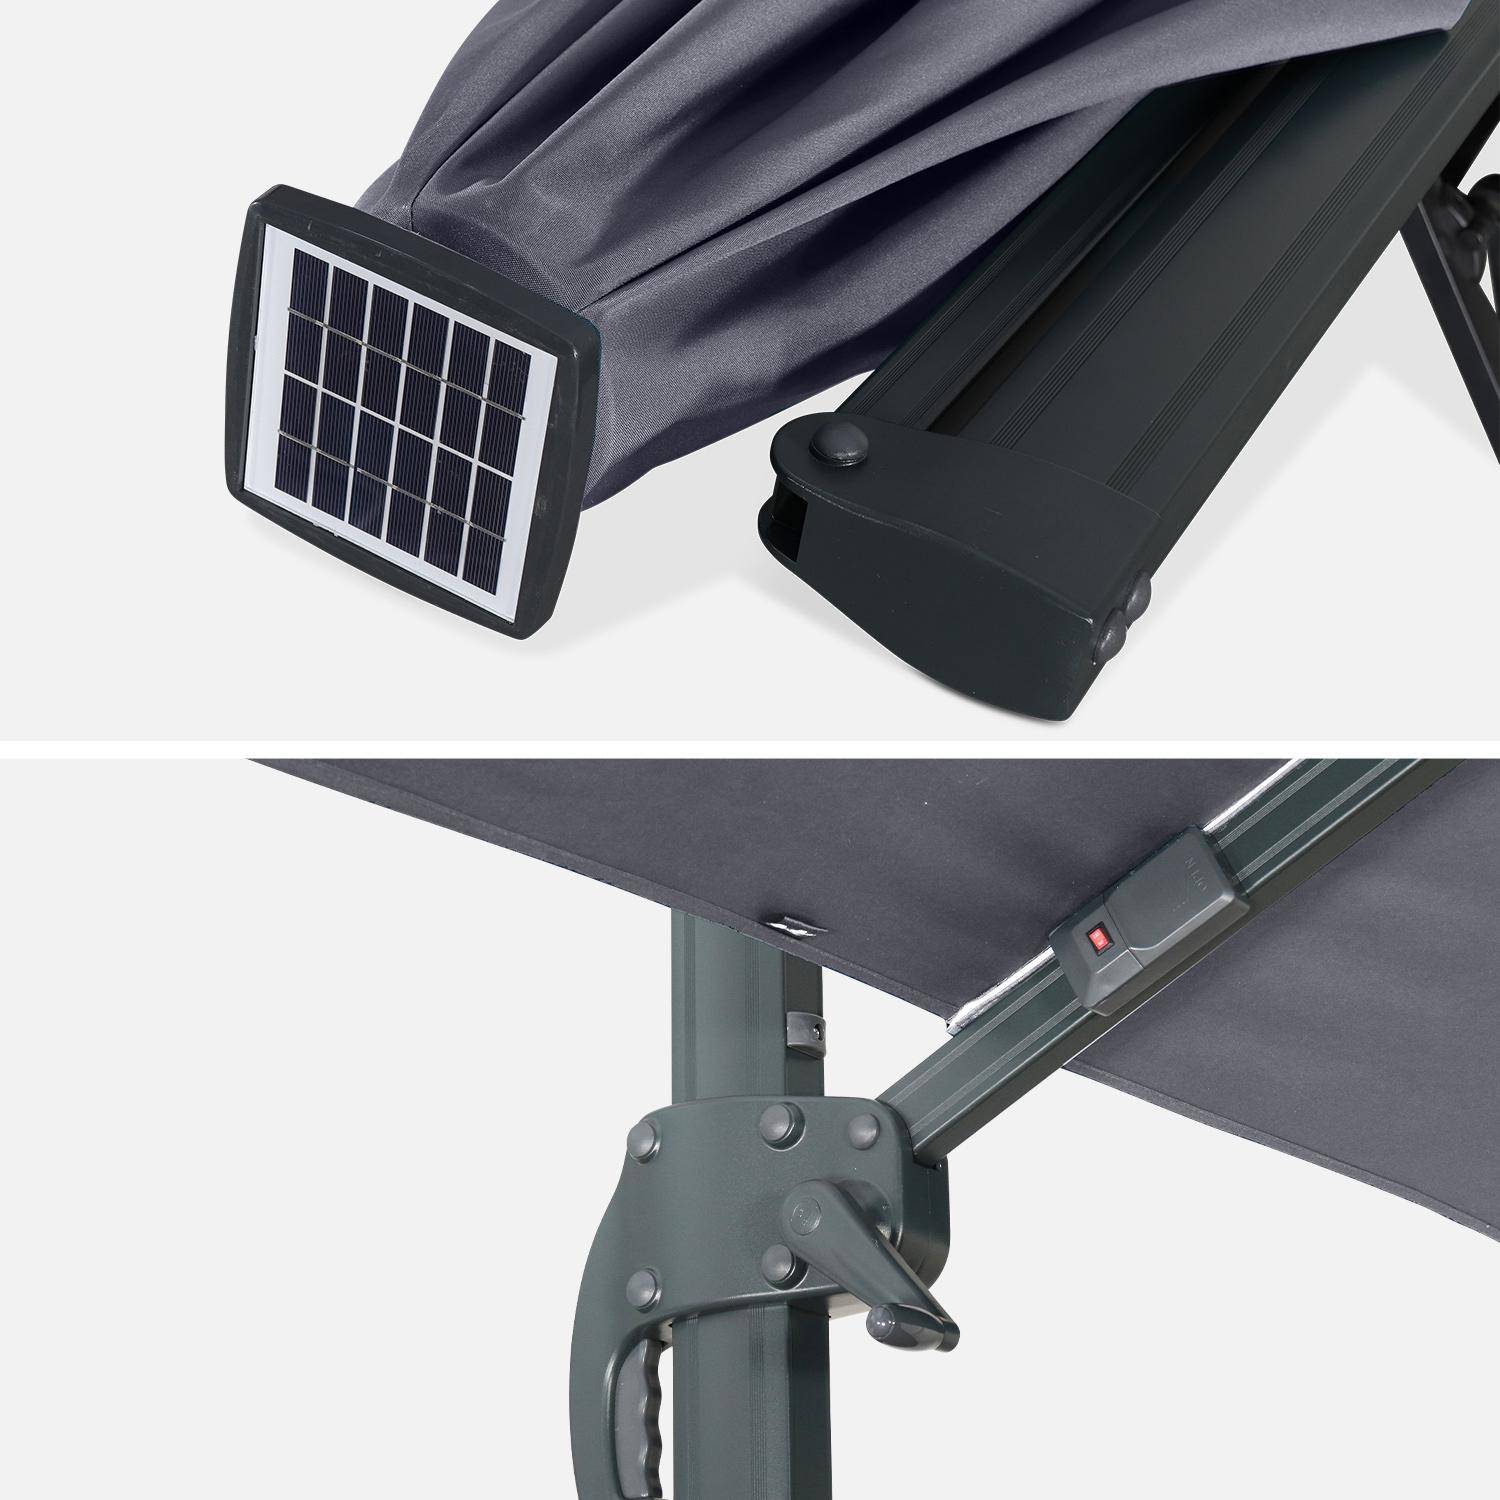 Qualitativ hochwertiger rechteckiger LED-Solar- Sonnenschirm 3 x 4 m - Luce Grau - kippbar, faltbar und 360 ° drehbar, Solarladegerät Photo7